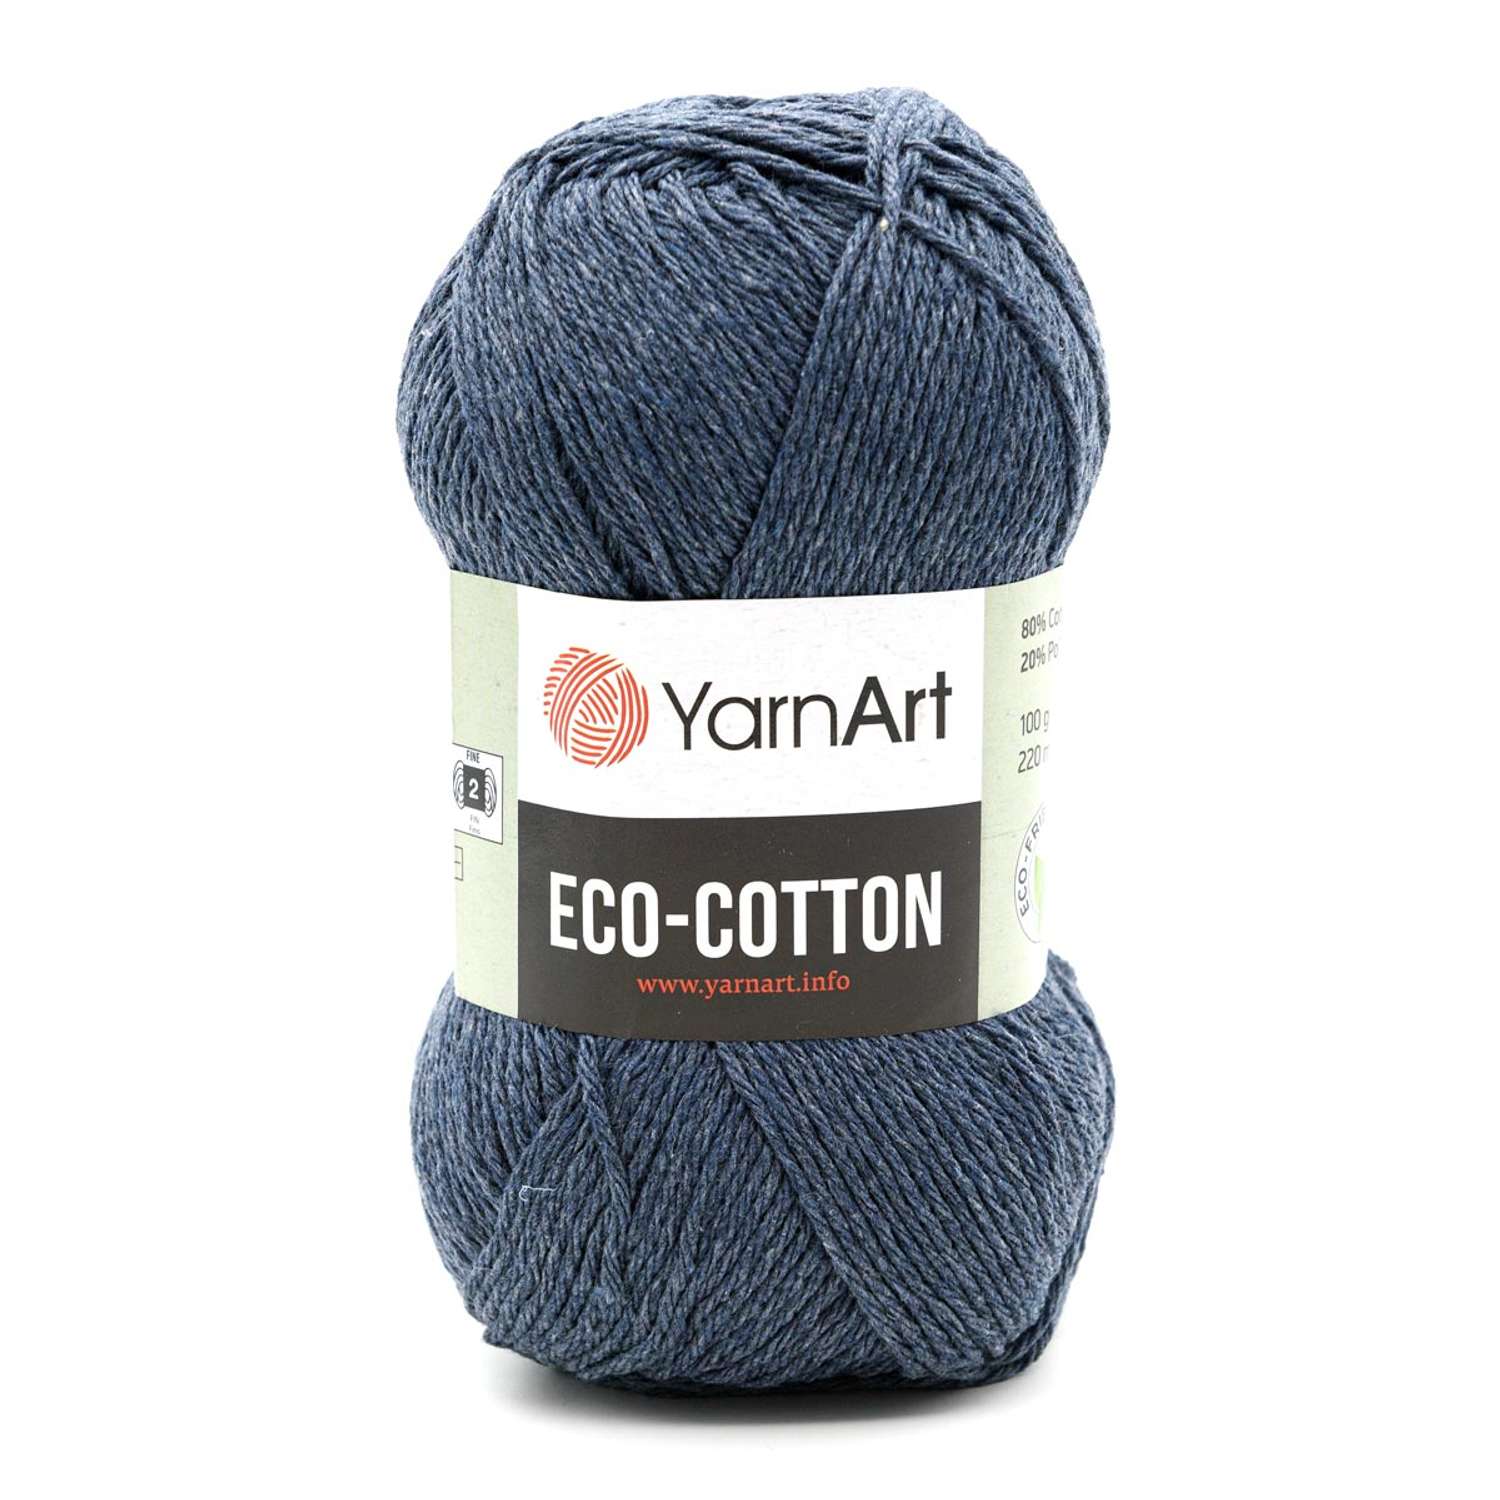 Пряжа YarnArt Eco Cotton комфортная для летних вещей 100 г 220 м 773 джинс 5 мотков - фото 6